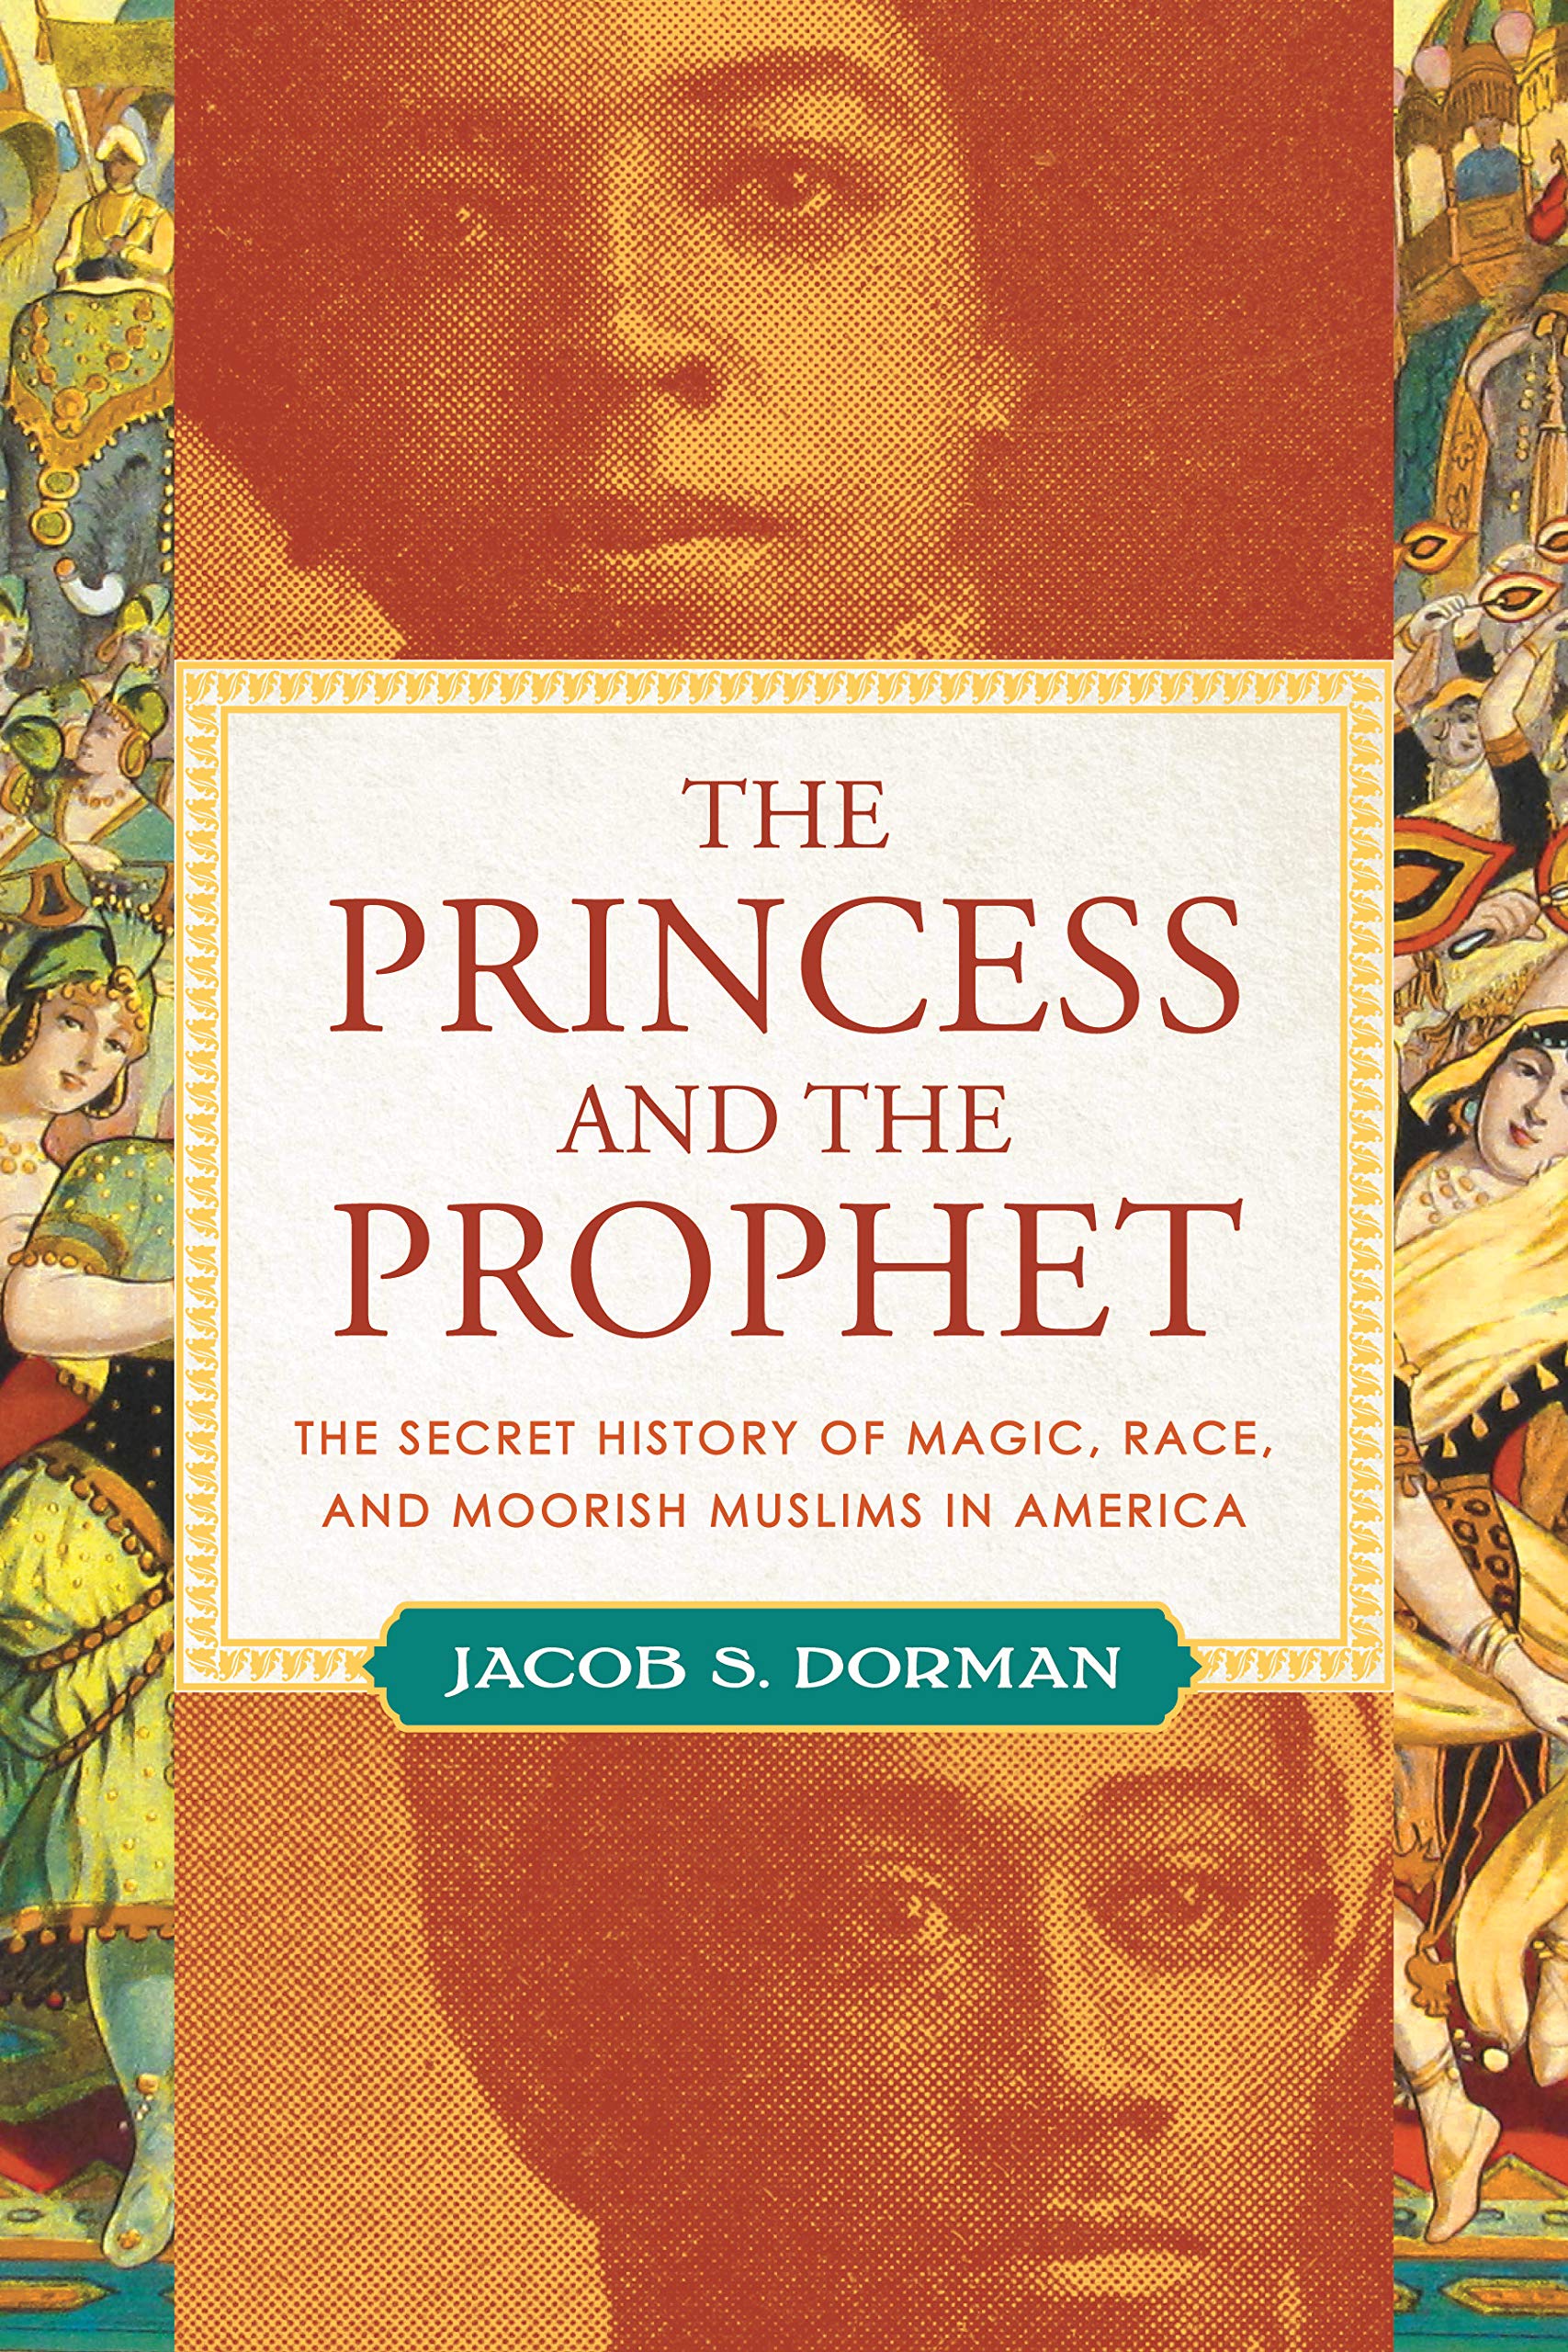 الغلاف الإنكليزي لكتاب "الأميرة والنبي" - الكاتب يعقوب دورمان. (published by Beacon Press)